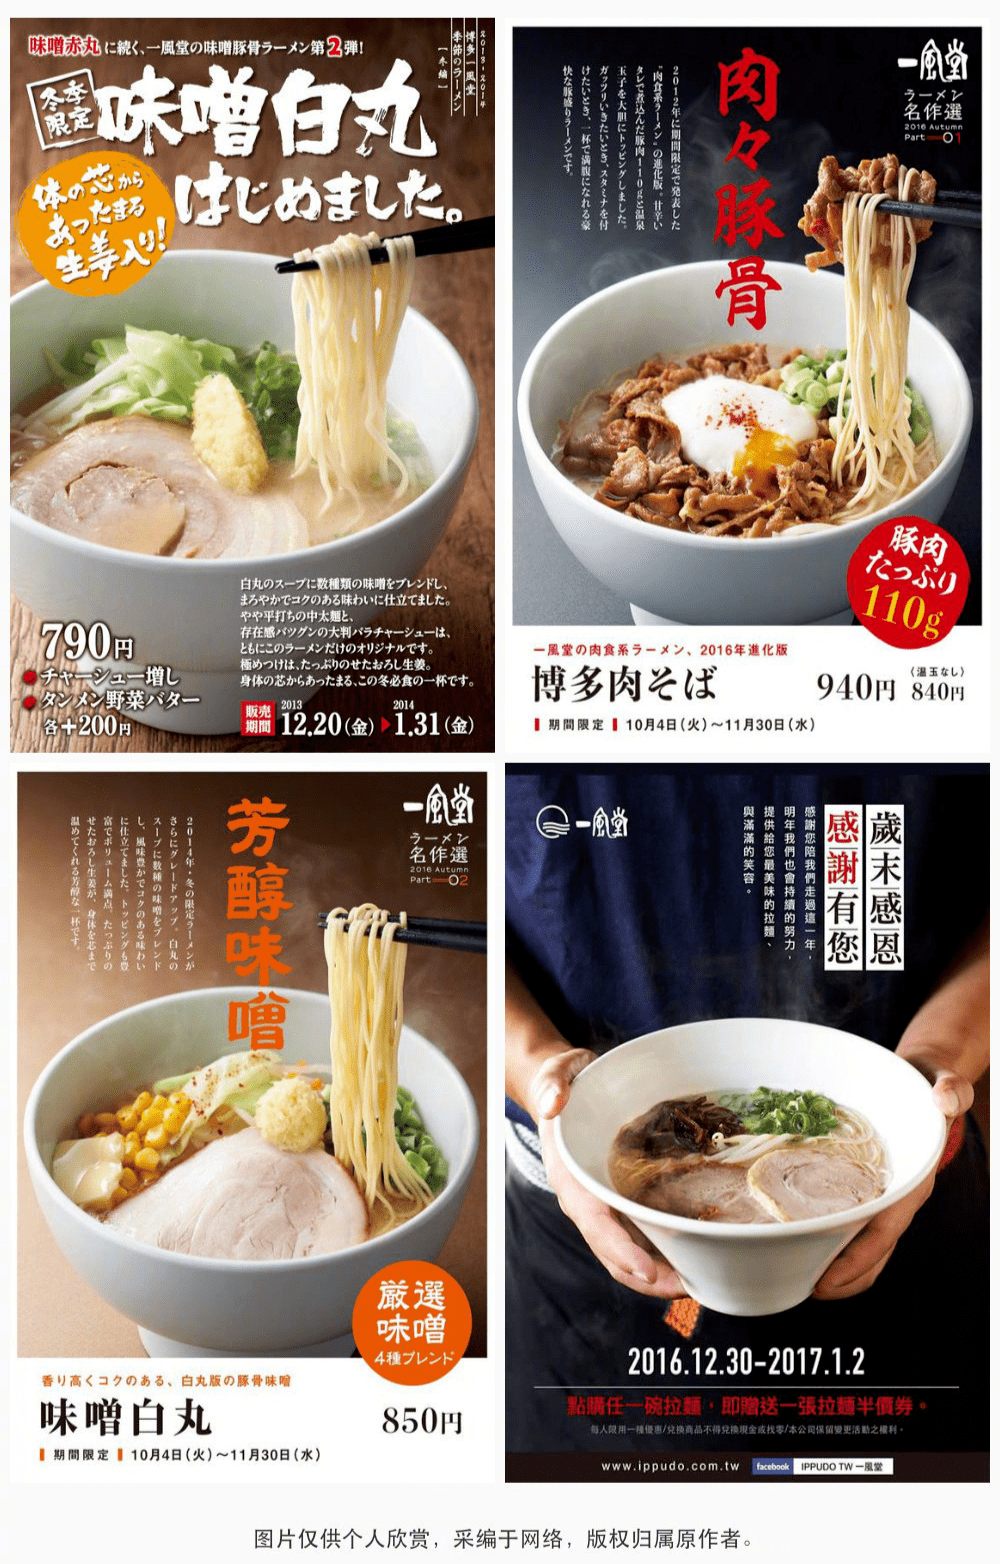 海报| 32款秀色可餐的日式拉面海报设计